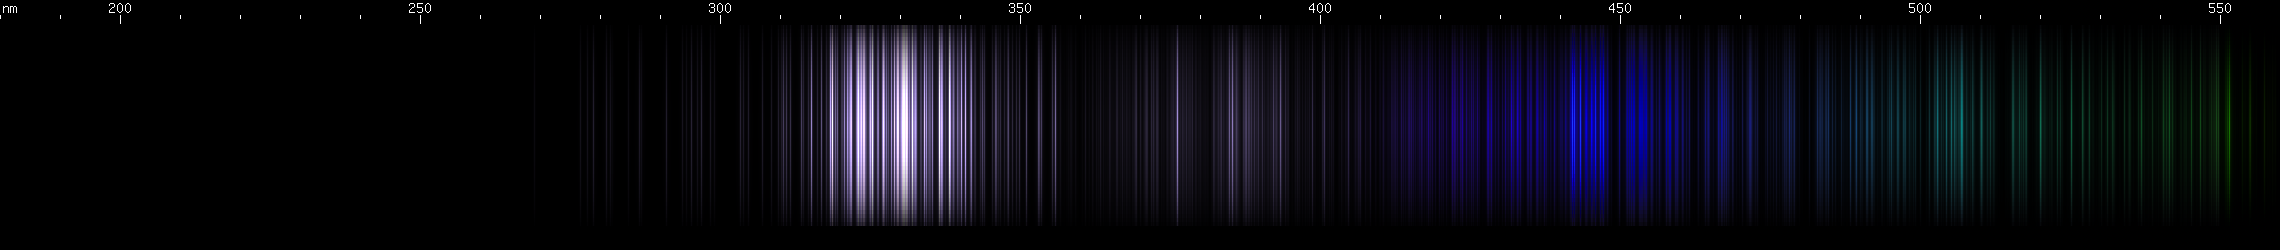 Spectral lines of Samarium.